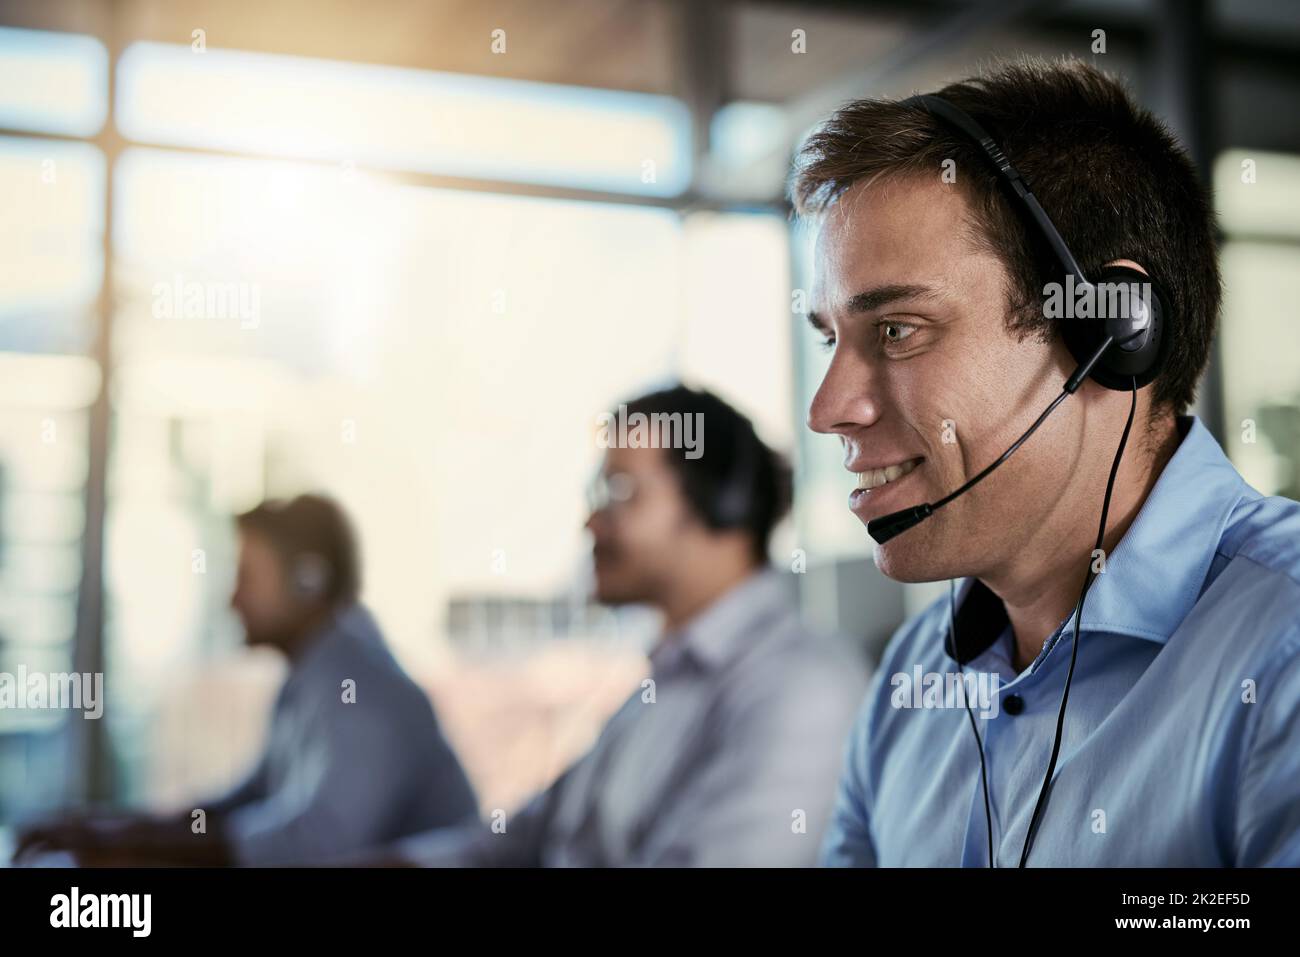 Zuverlässiger Kundendienst ist nur einen Anruf entfernt. Ein Bild eines Callcenter-Agenten, der in einem Büro arbeitet, mit seinen Kollegen im Hintergrund. Stockfoto